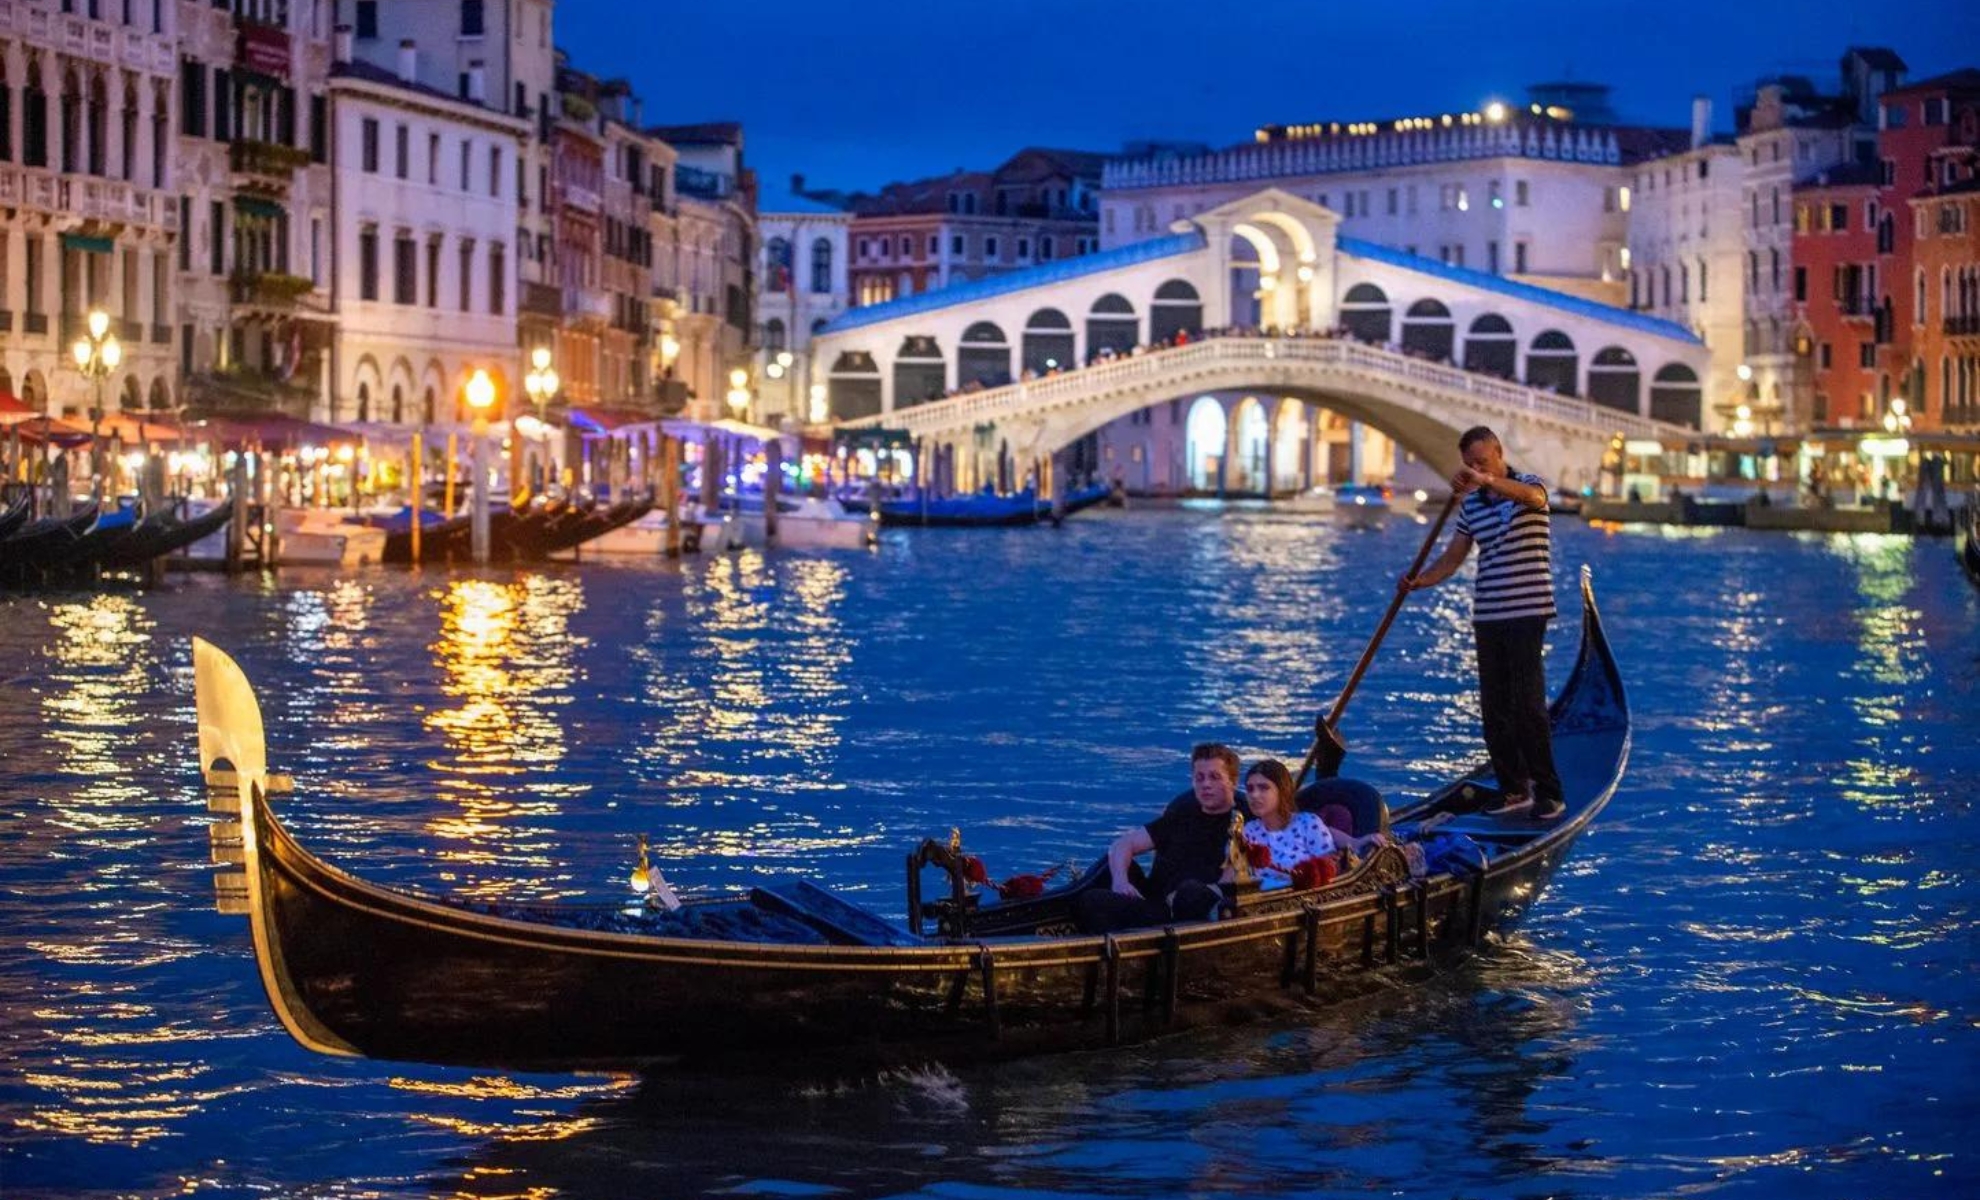 Le pont Rialto, le grand canal de Venise, Italie